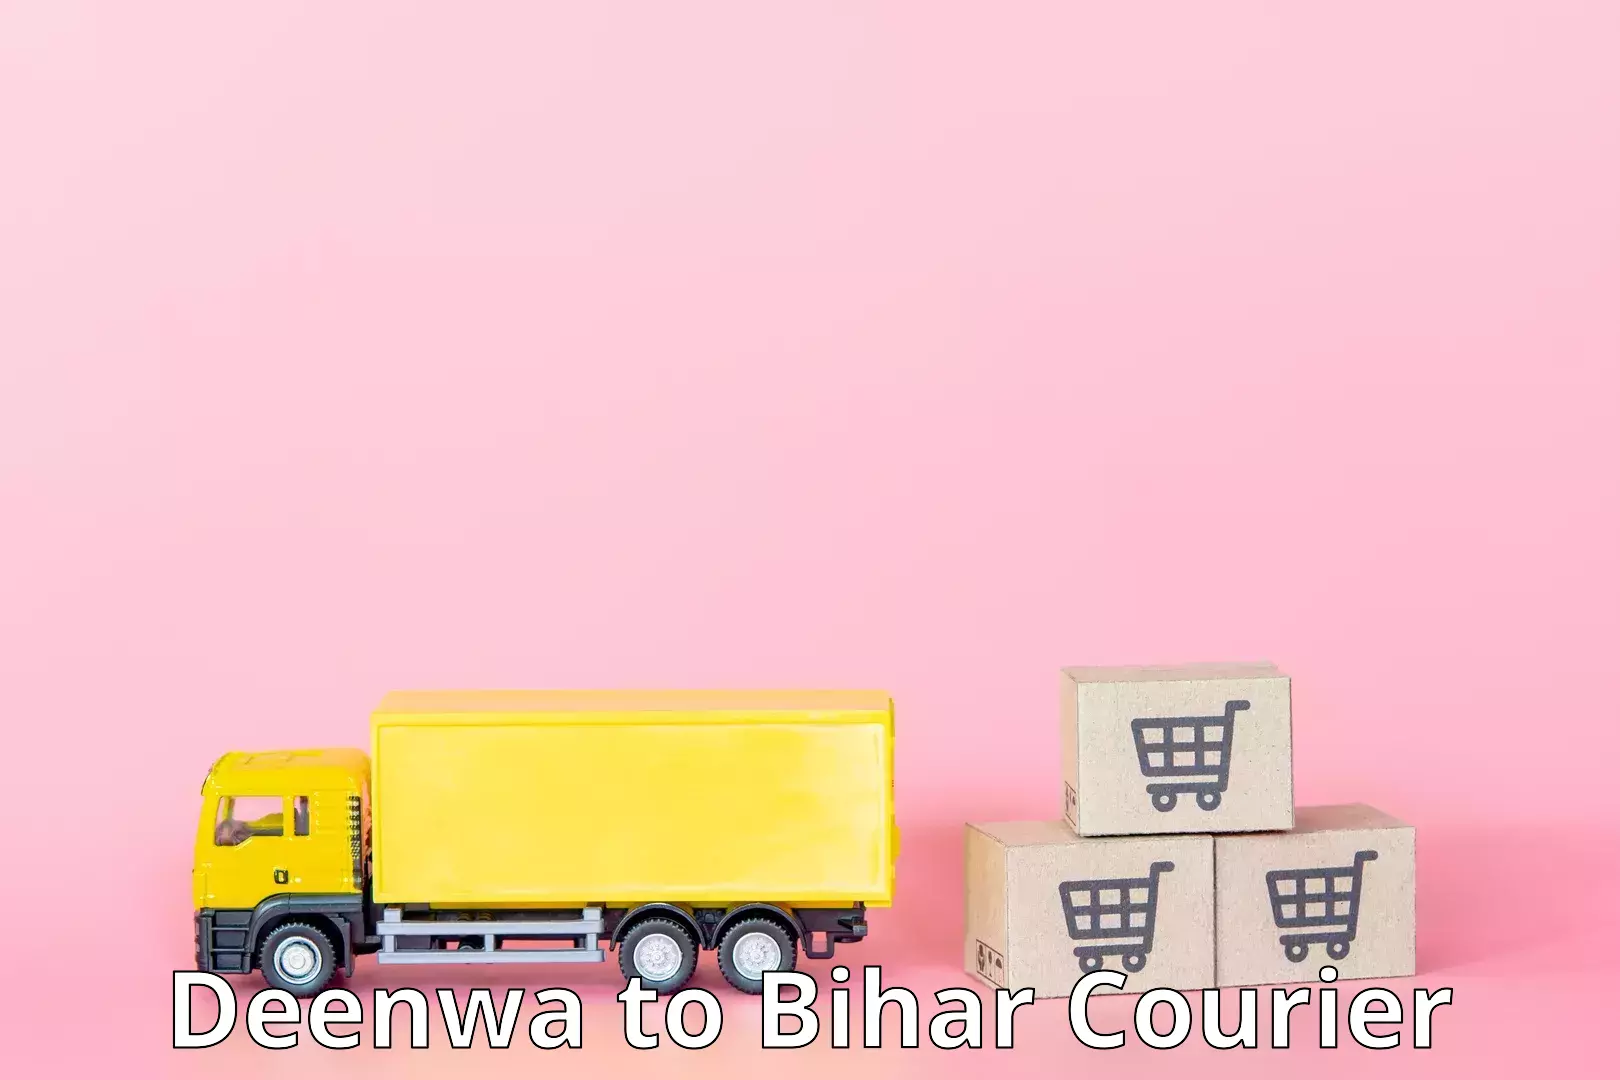 Enhanced shipping experience Deenwa to Bihar